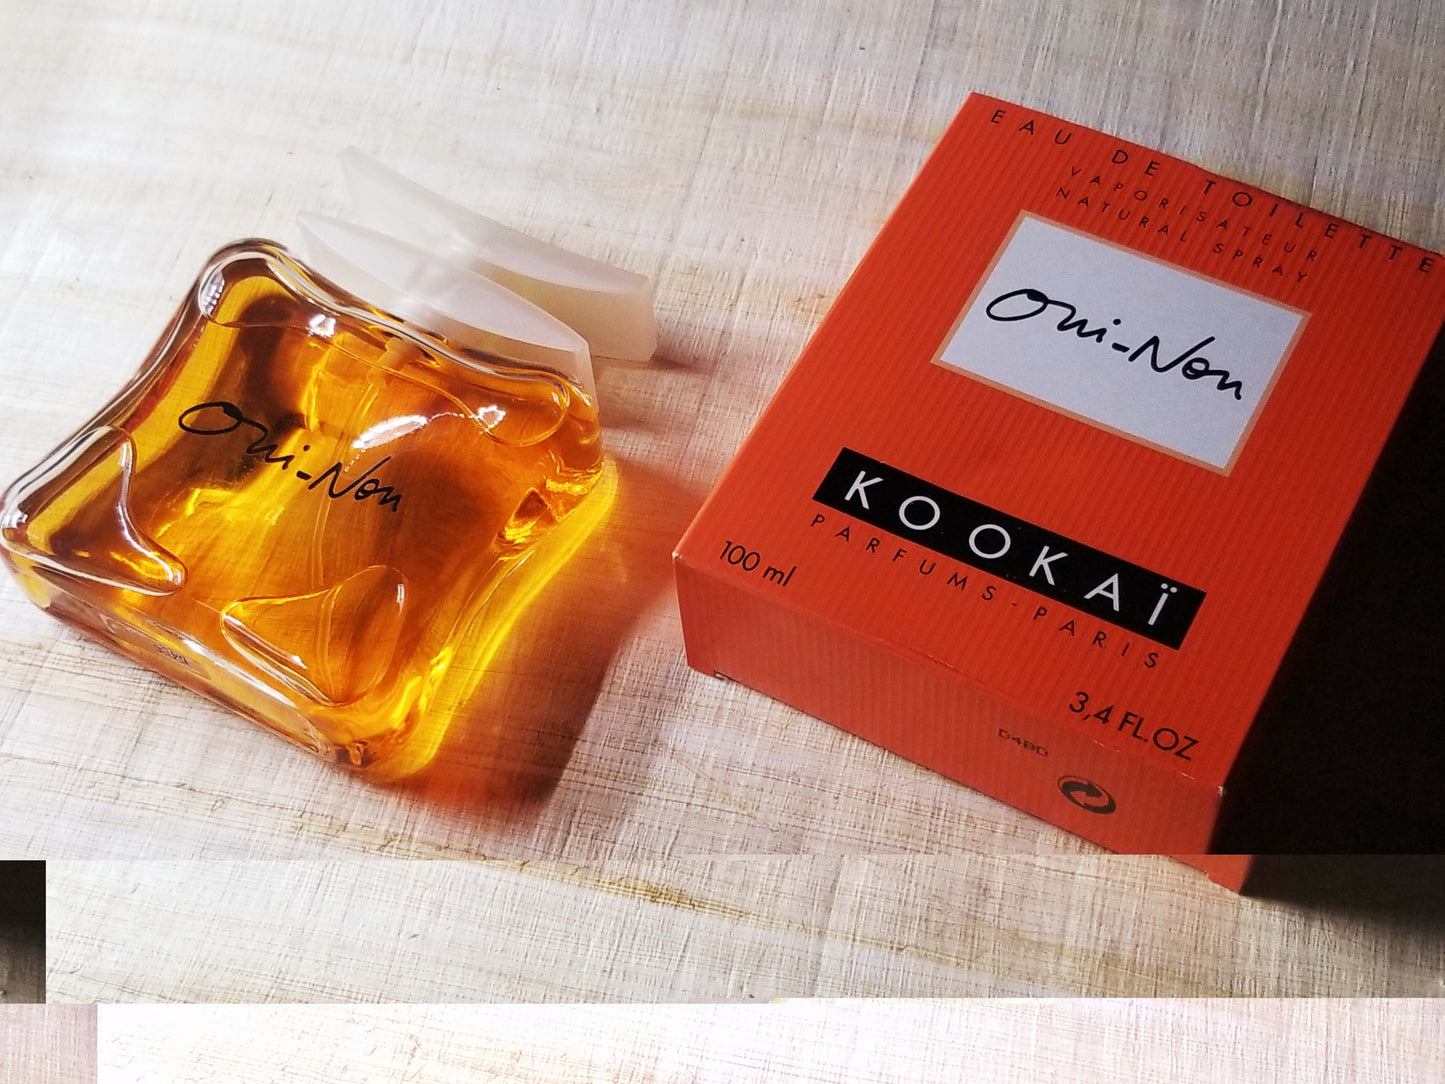 Oui-Non Kookai for women EDT Spray 100 ml 3.4 oz Or 50 ml 1.7 oz, Vintage